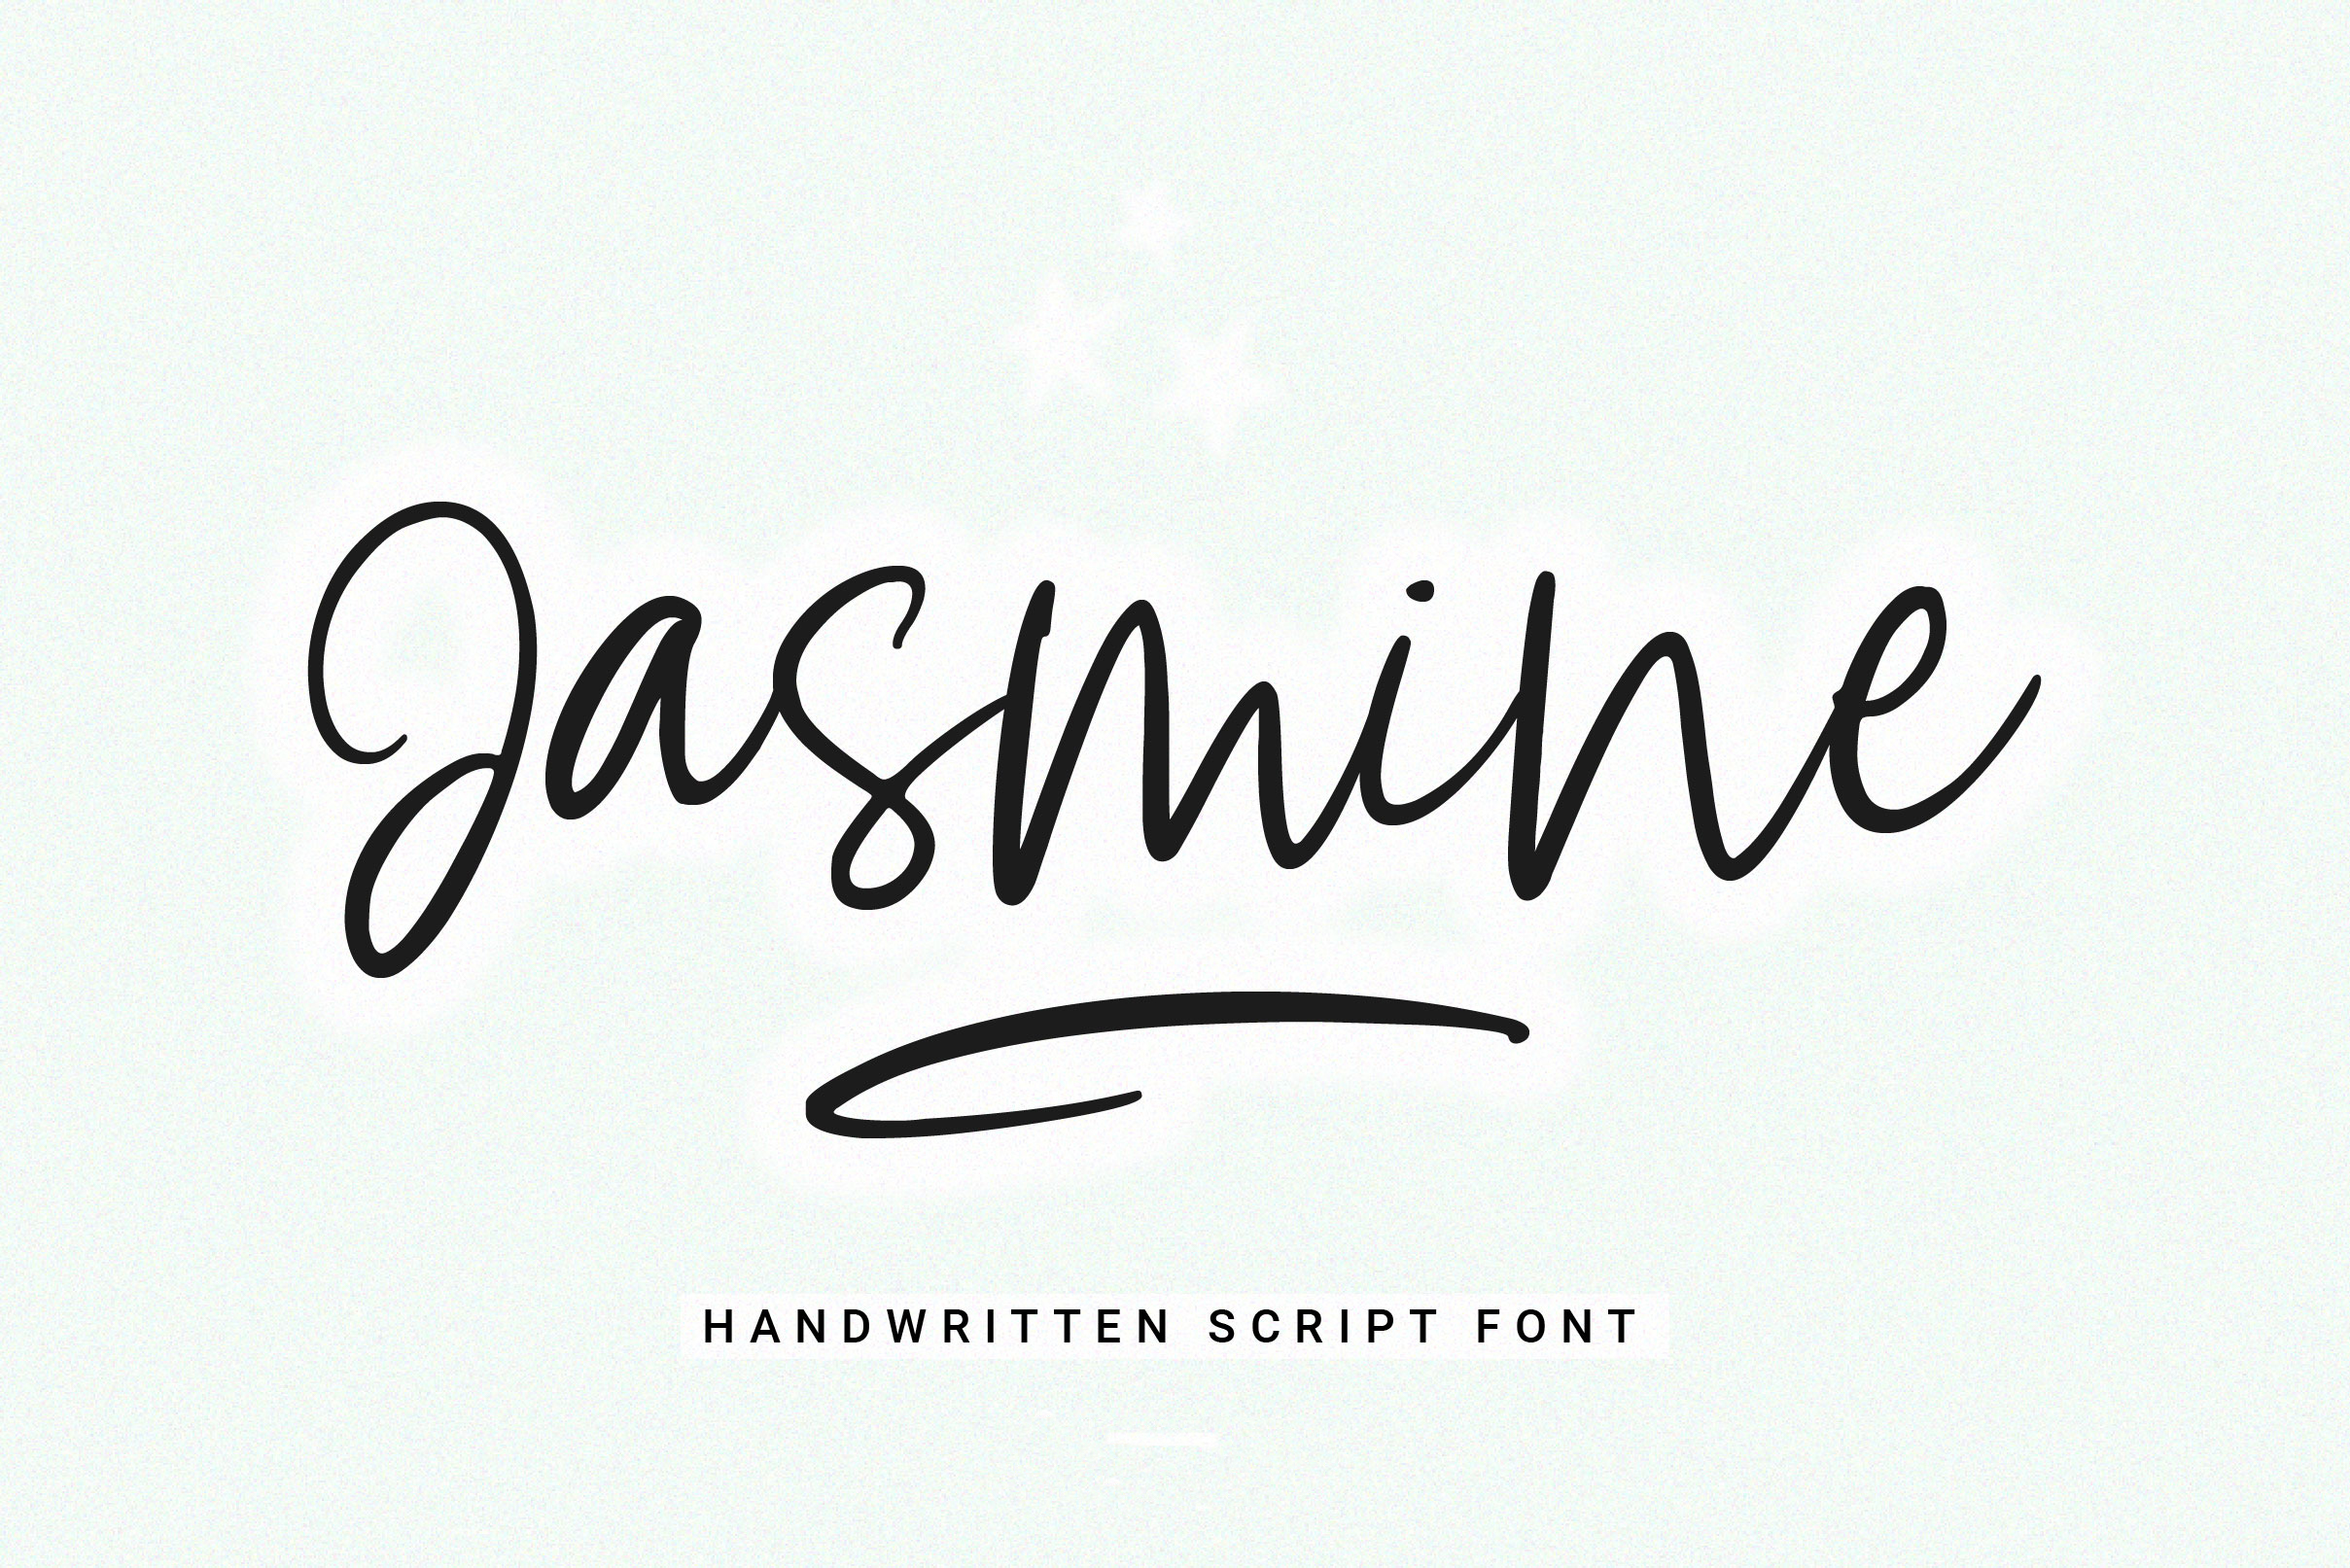 Jasmine Handwritten Script